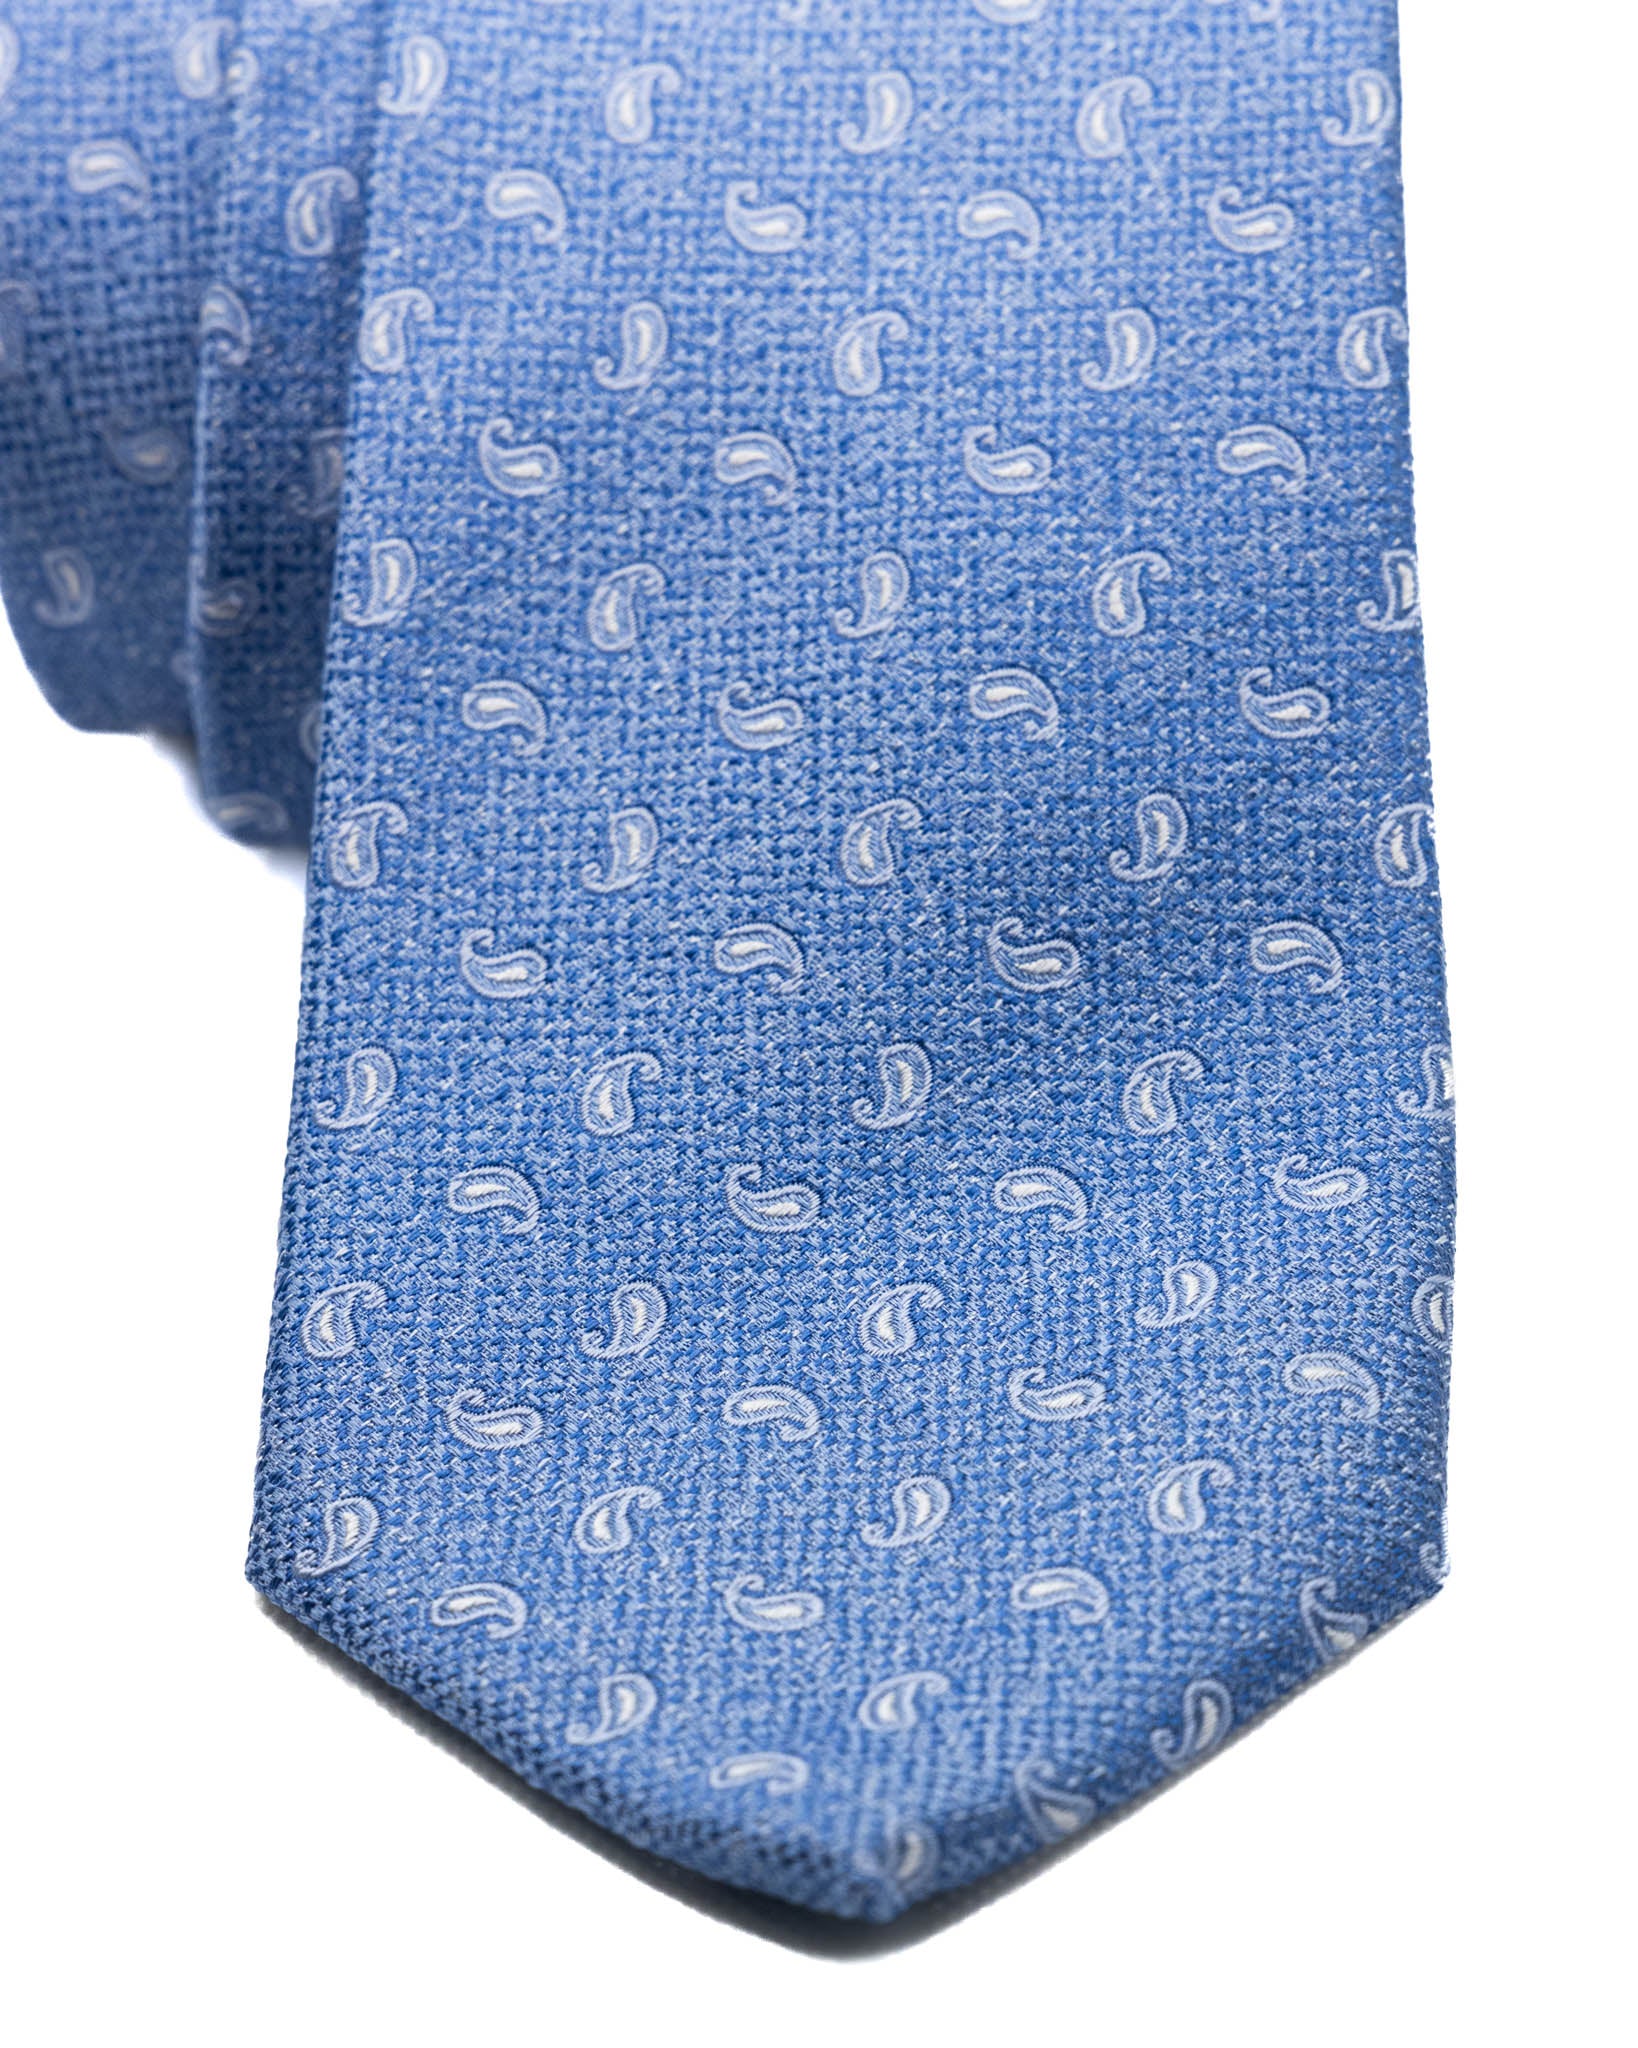 Cravate - en soie gaufrée cachemire bleue